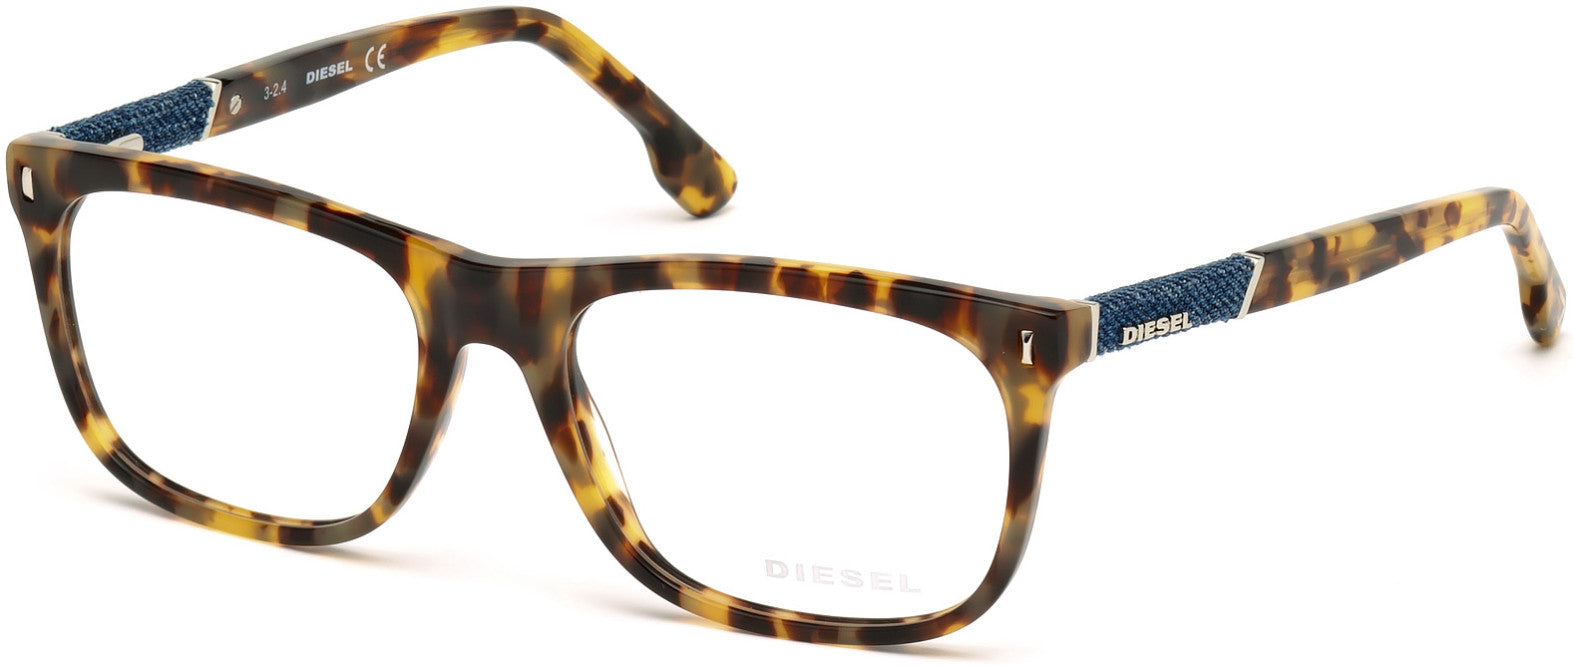 Diesel DL5157 Geometric Eyeglasses 053-053 - Blonde Havana